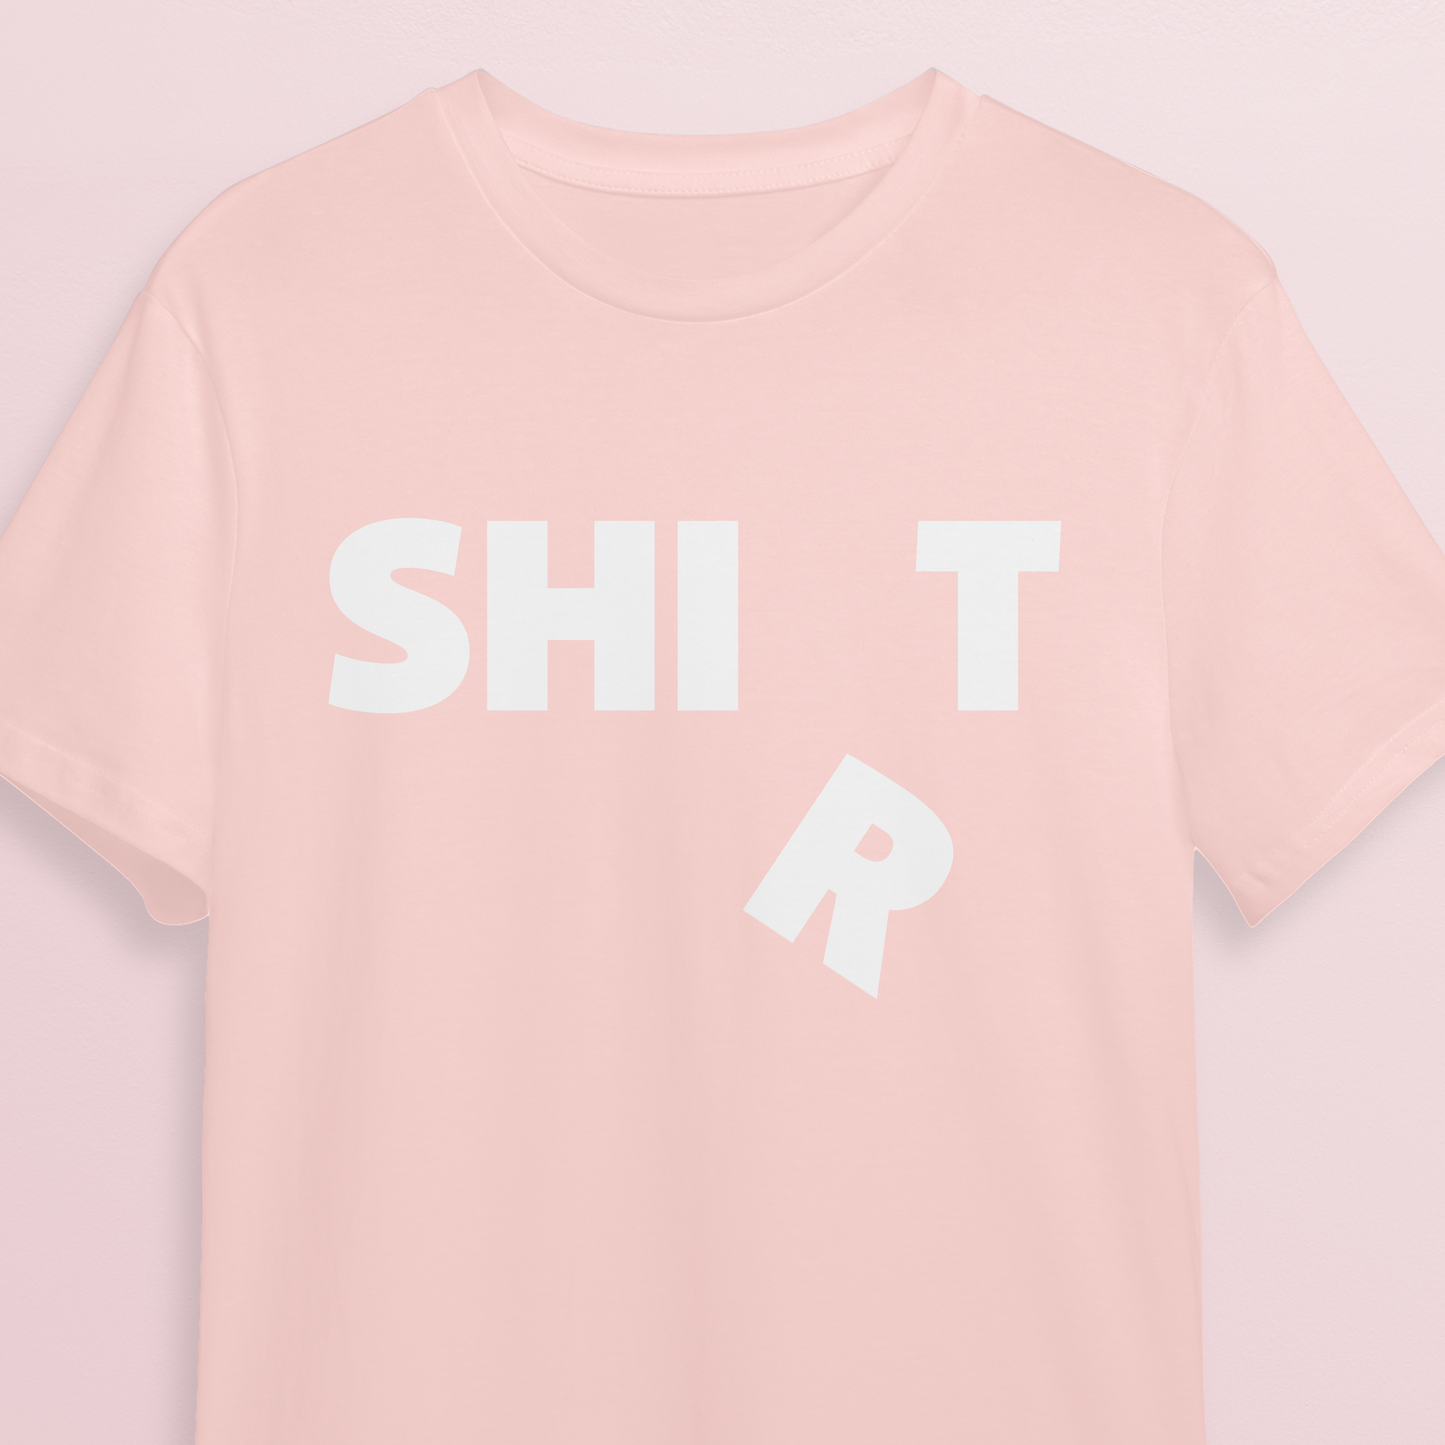 T-shirt - SHI(R)T - Soft rose